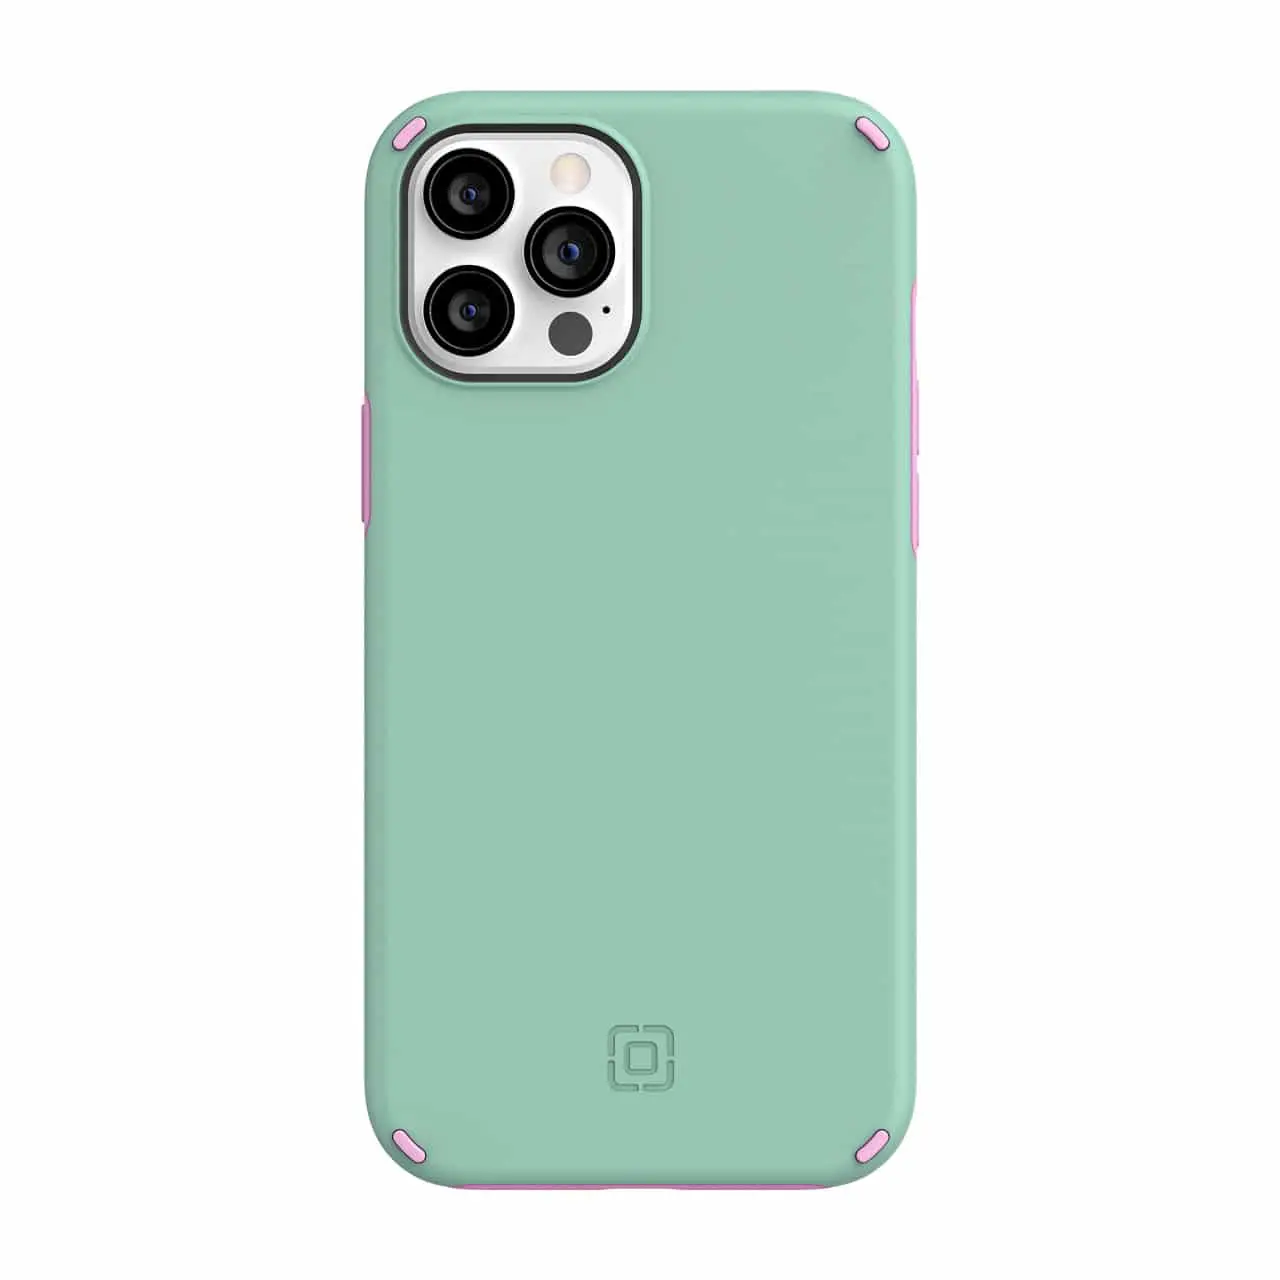 เคสกันกระแทก Incipio รุ่น Duo - iPhone 12 Pro Max - สีมิ้น/ชมพู